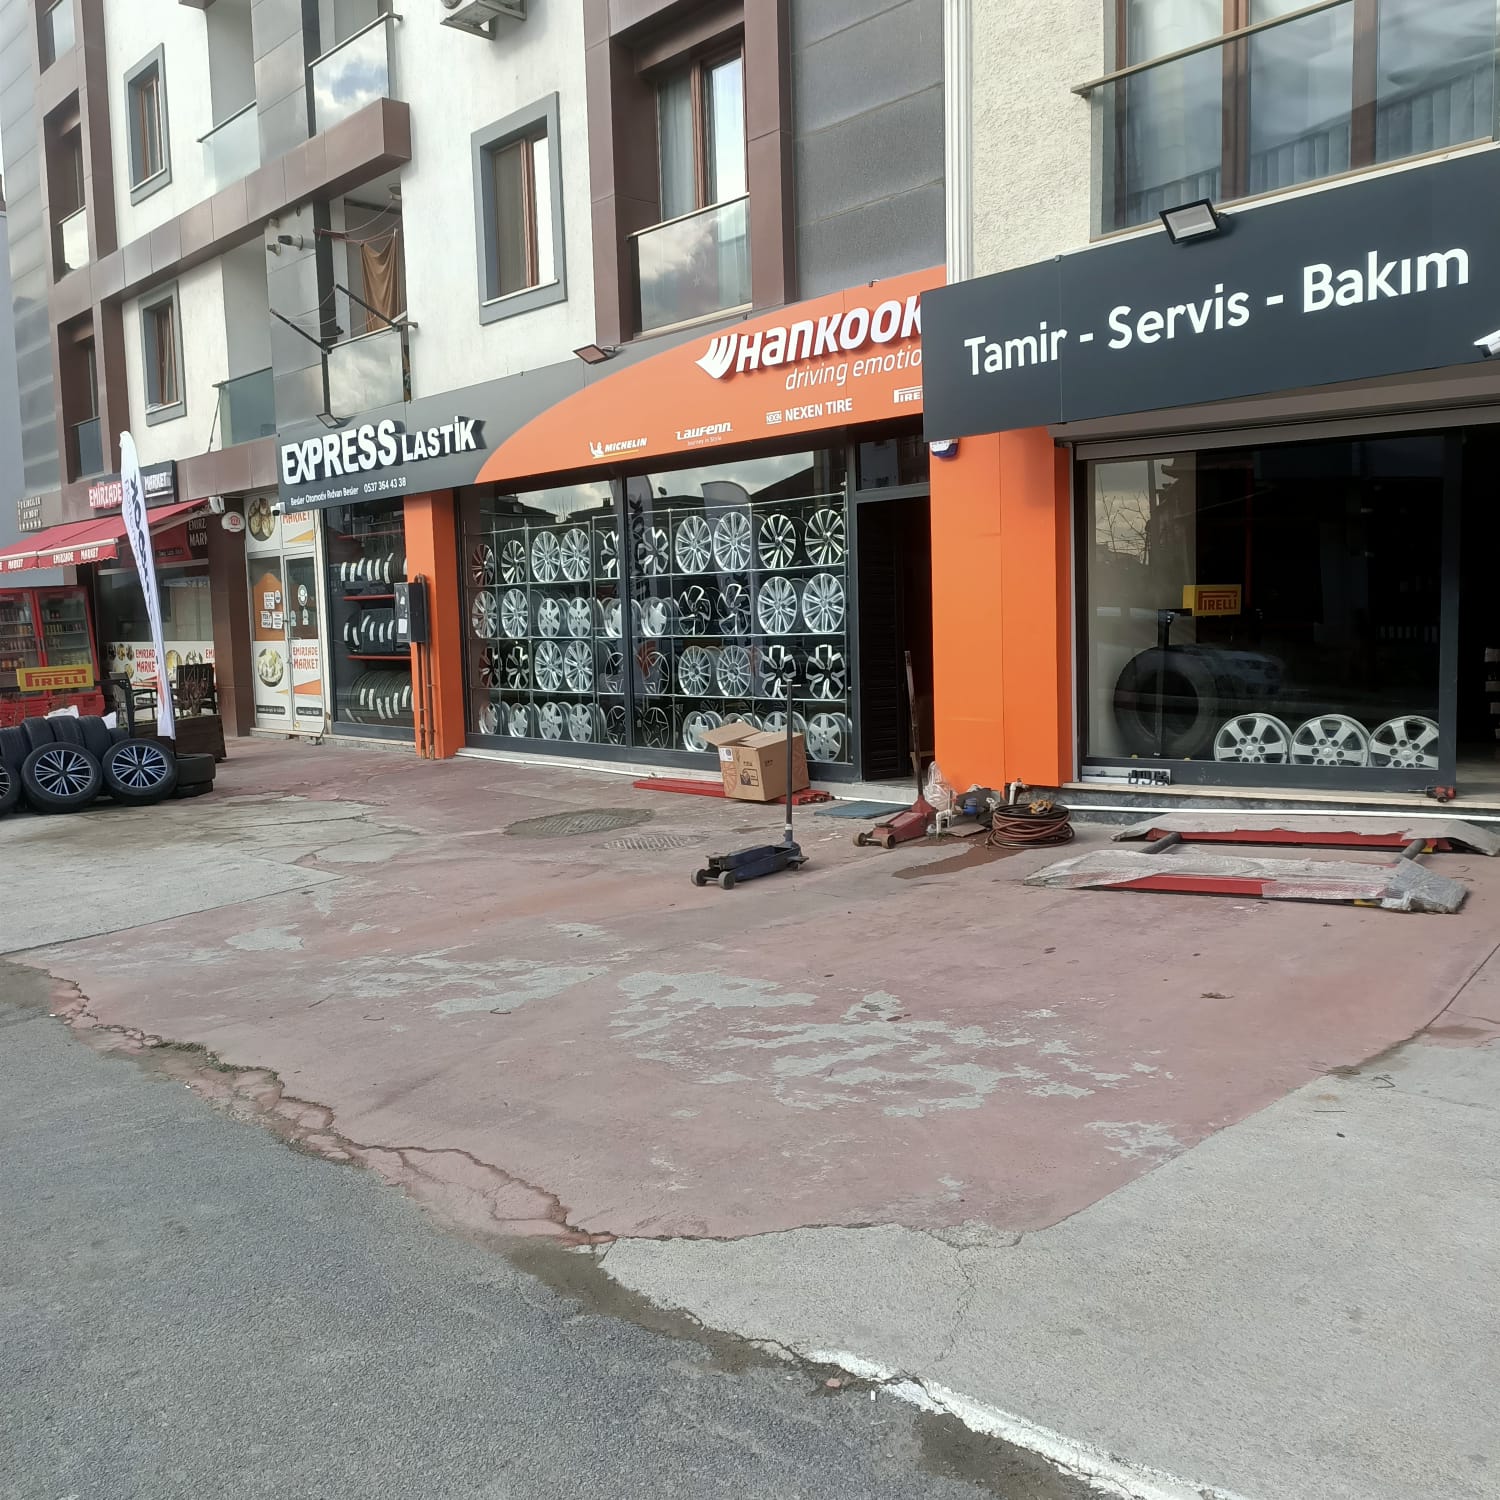 Kurtköy Lastikçi, Kurtköy Yol yardım, Kurtköy yerinde lastik değişimi, Kurtköy lastik satışı